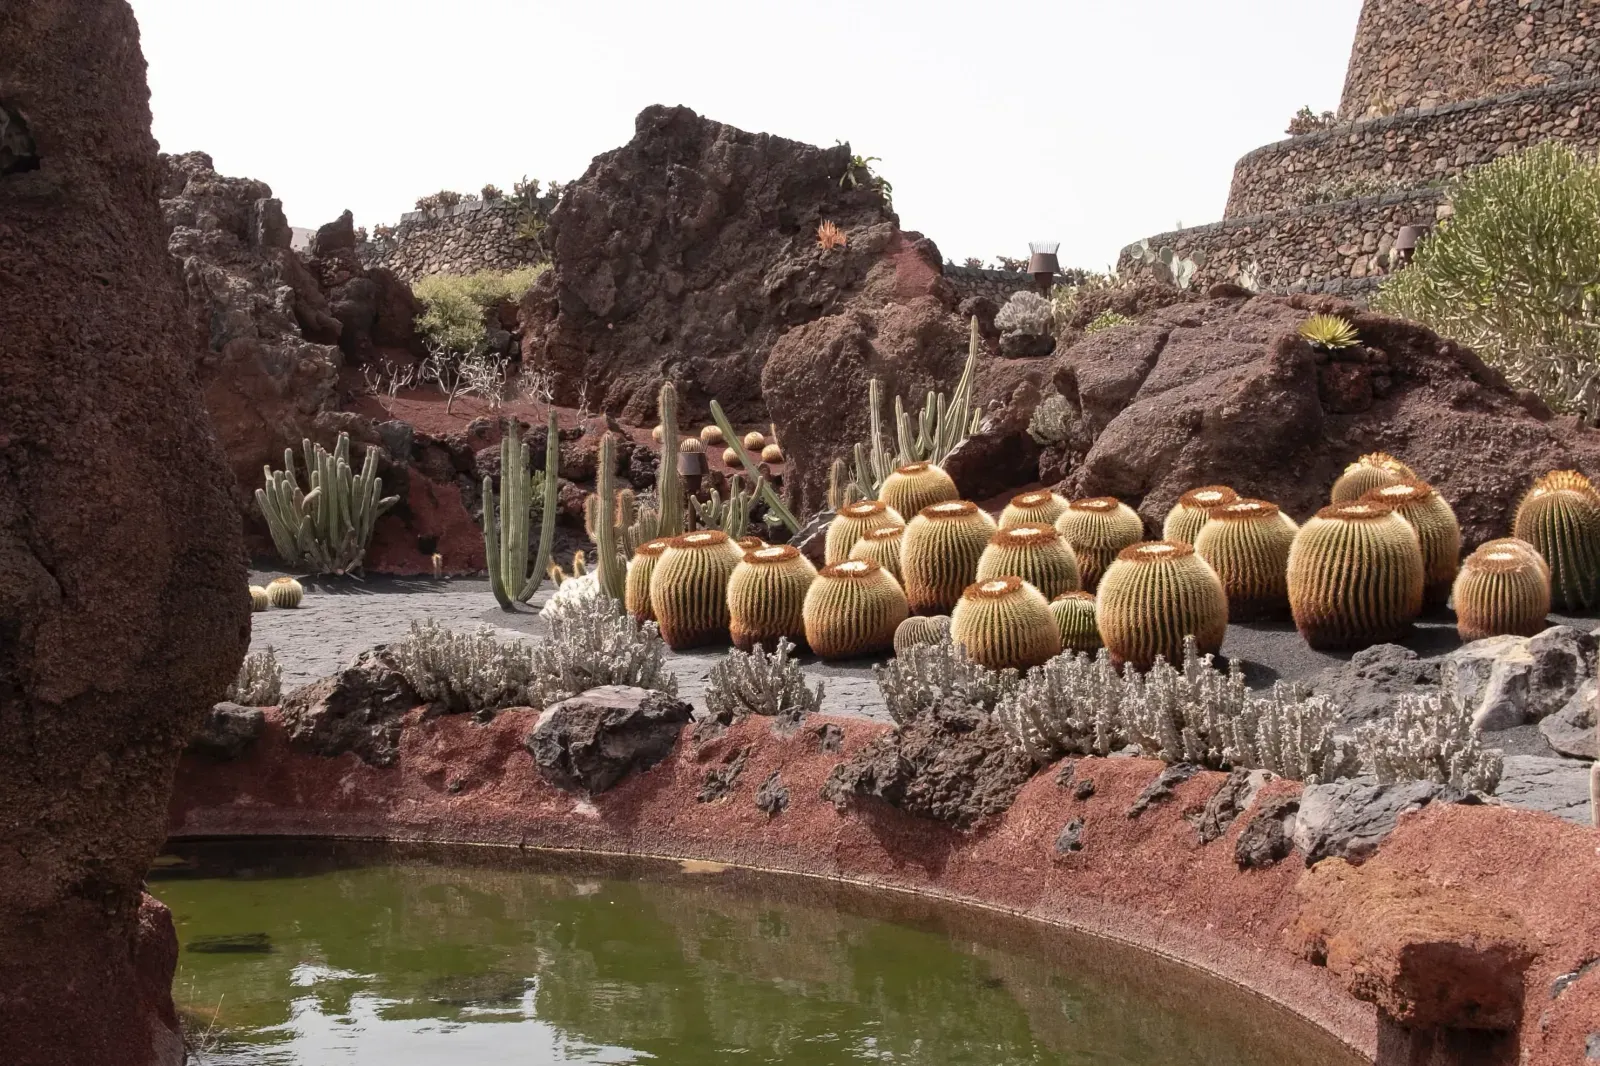 Lanzarote's Cactus Garden